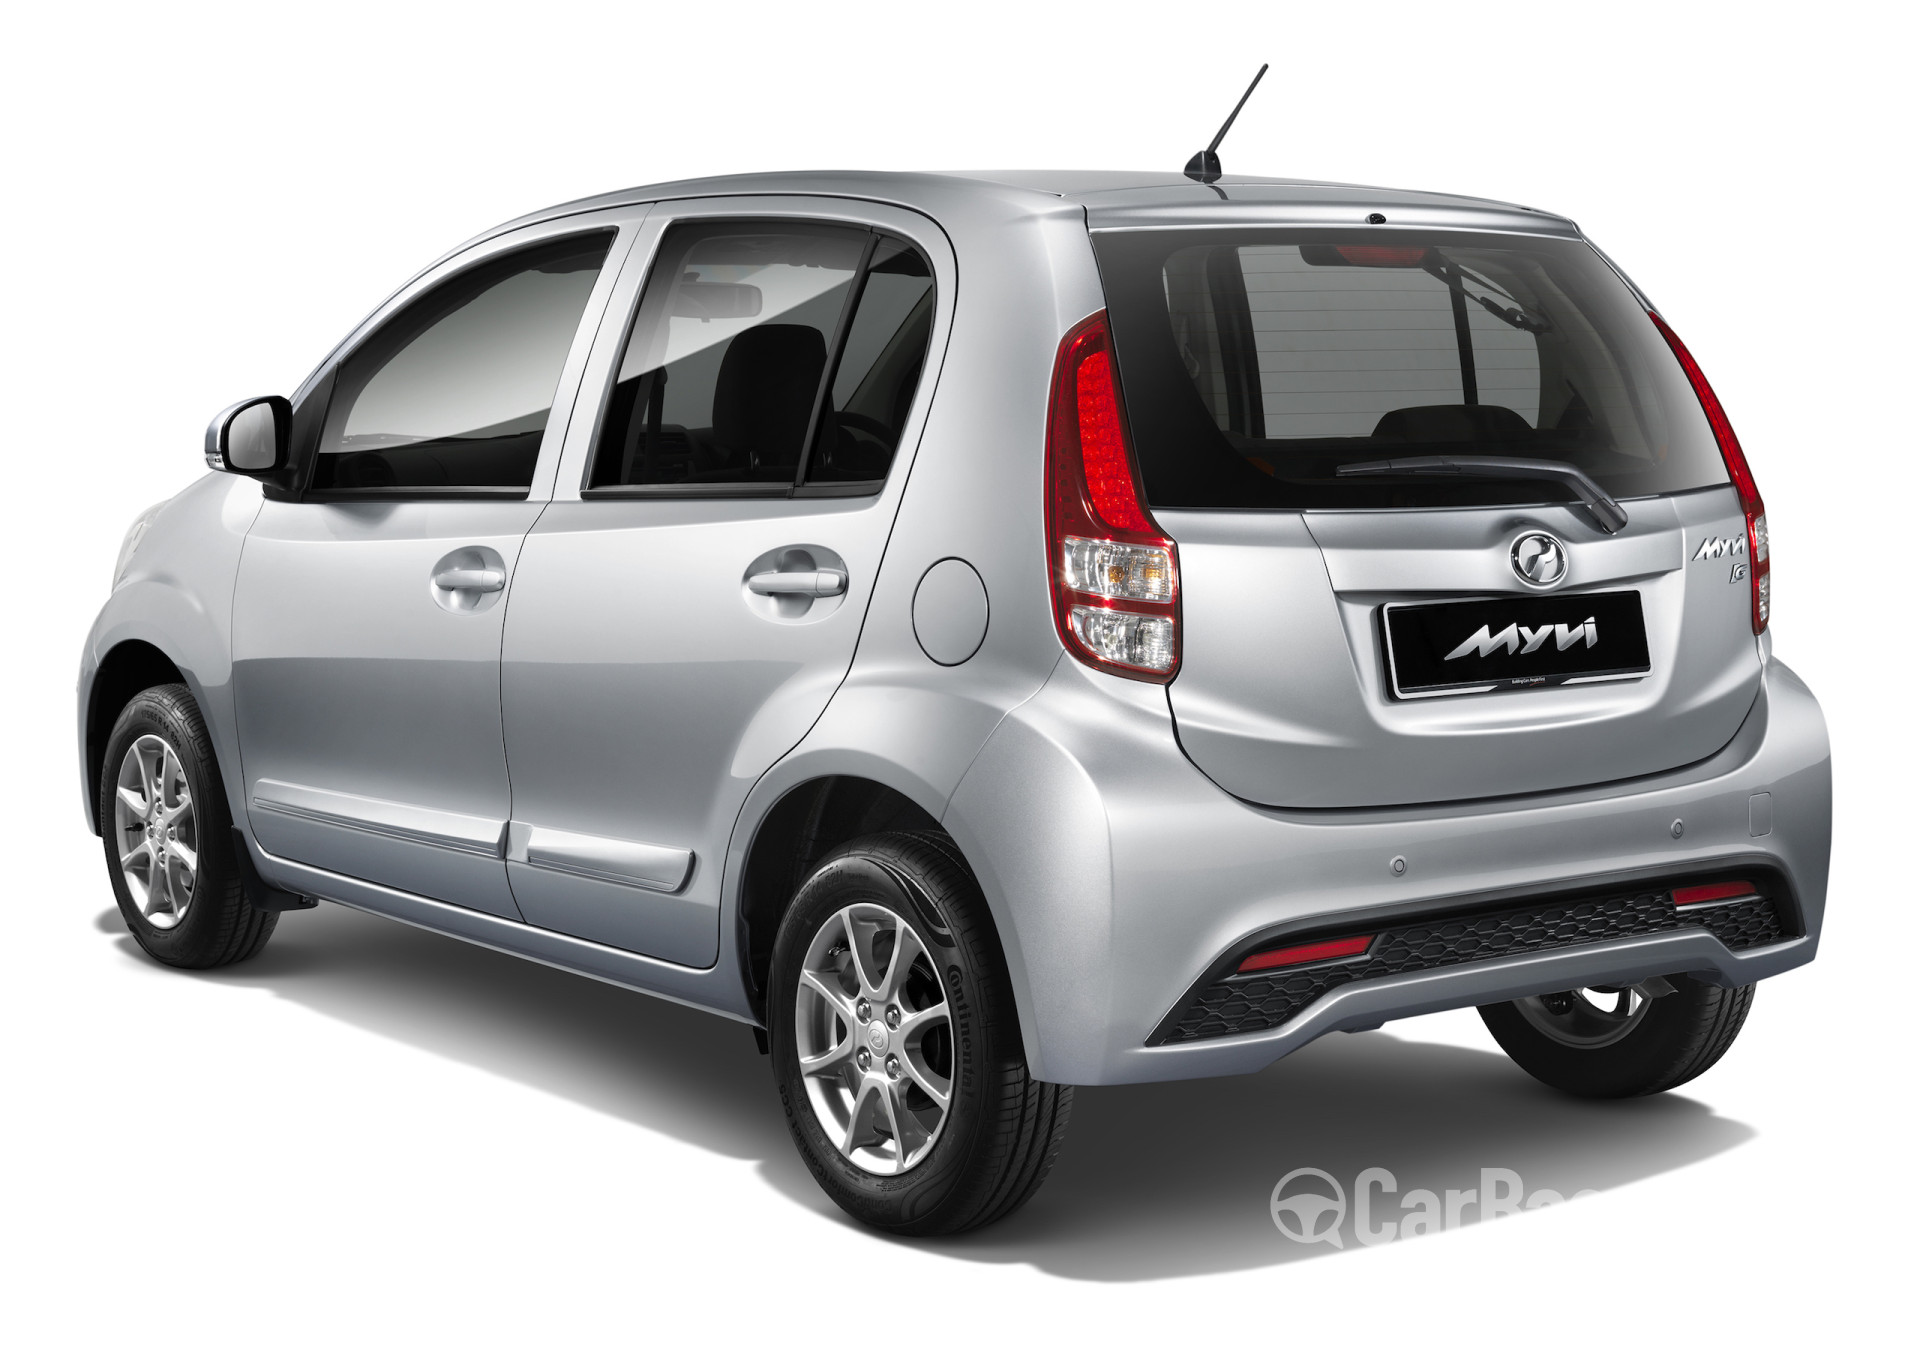 Perodua Alza 2019 Price Malaysia - Klewer mm